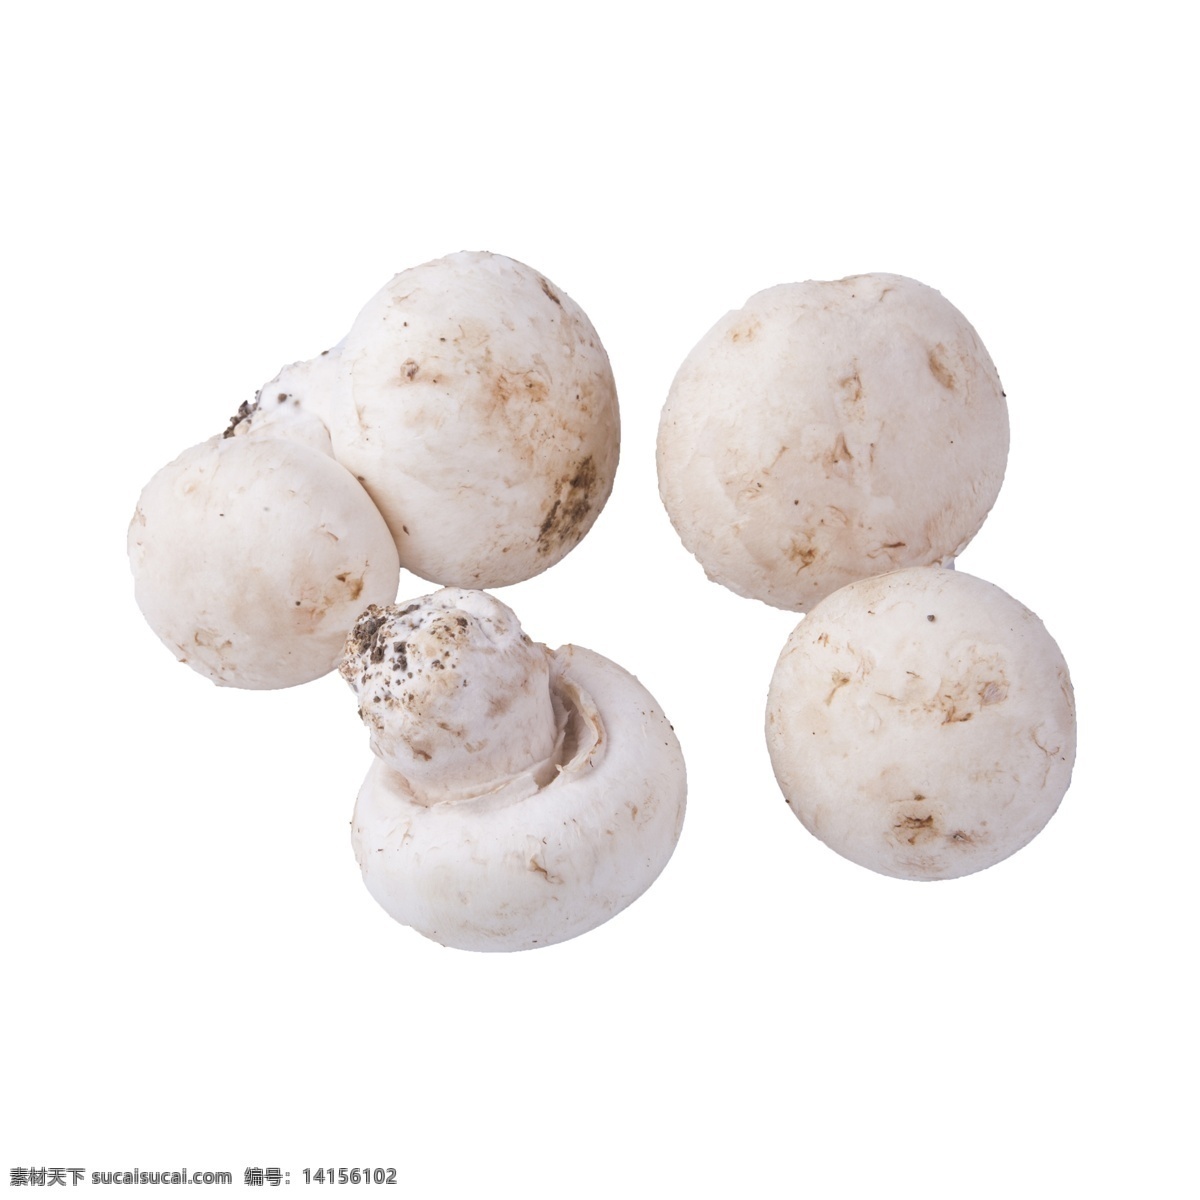 五 白 蘑菇 免 抠 五个白蘑菇 好吃的白蘑菇 新鲜的白蘑菇 有营养的蔬菜 食物